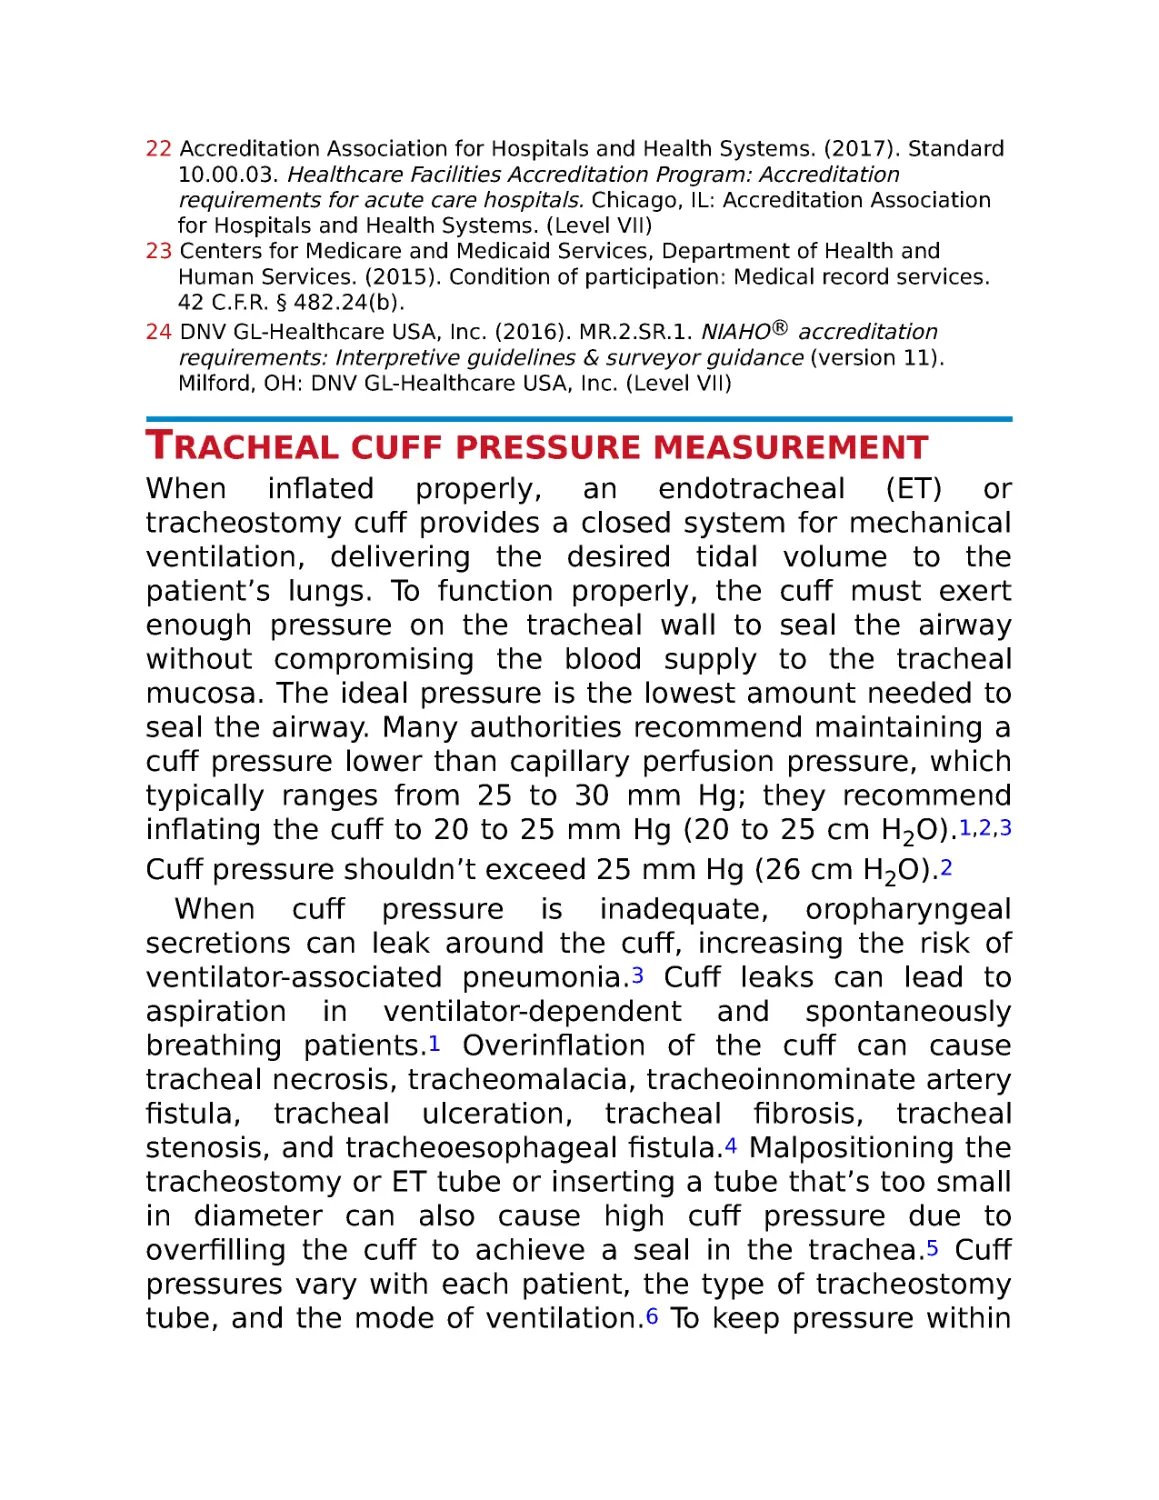 Tracheal cuff pressure measurement